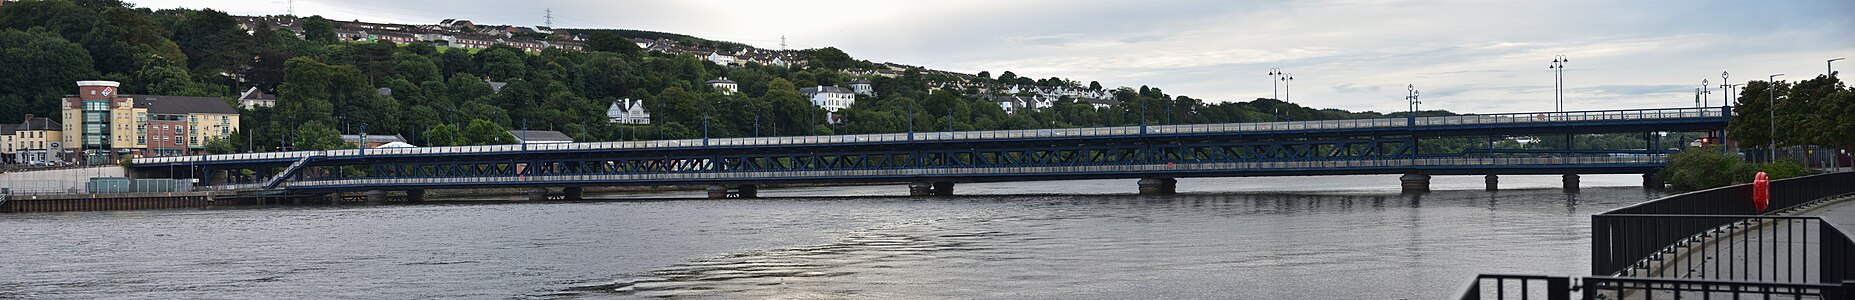 Craigavon Bridge, Derry 2018-07-29.jpg